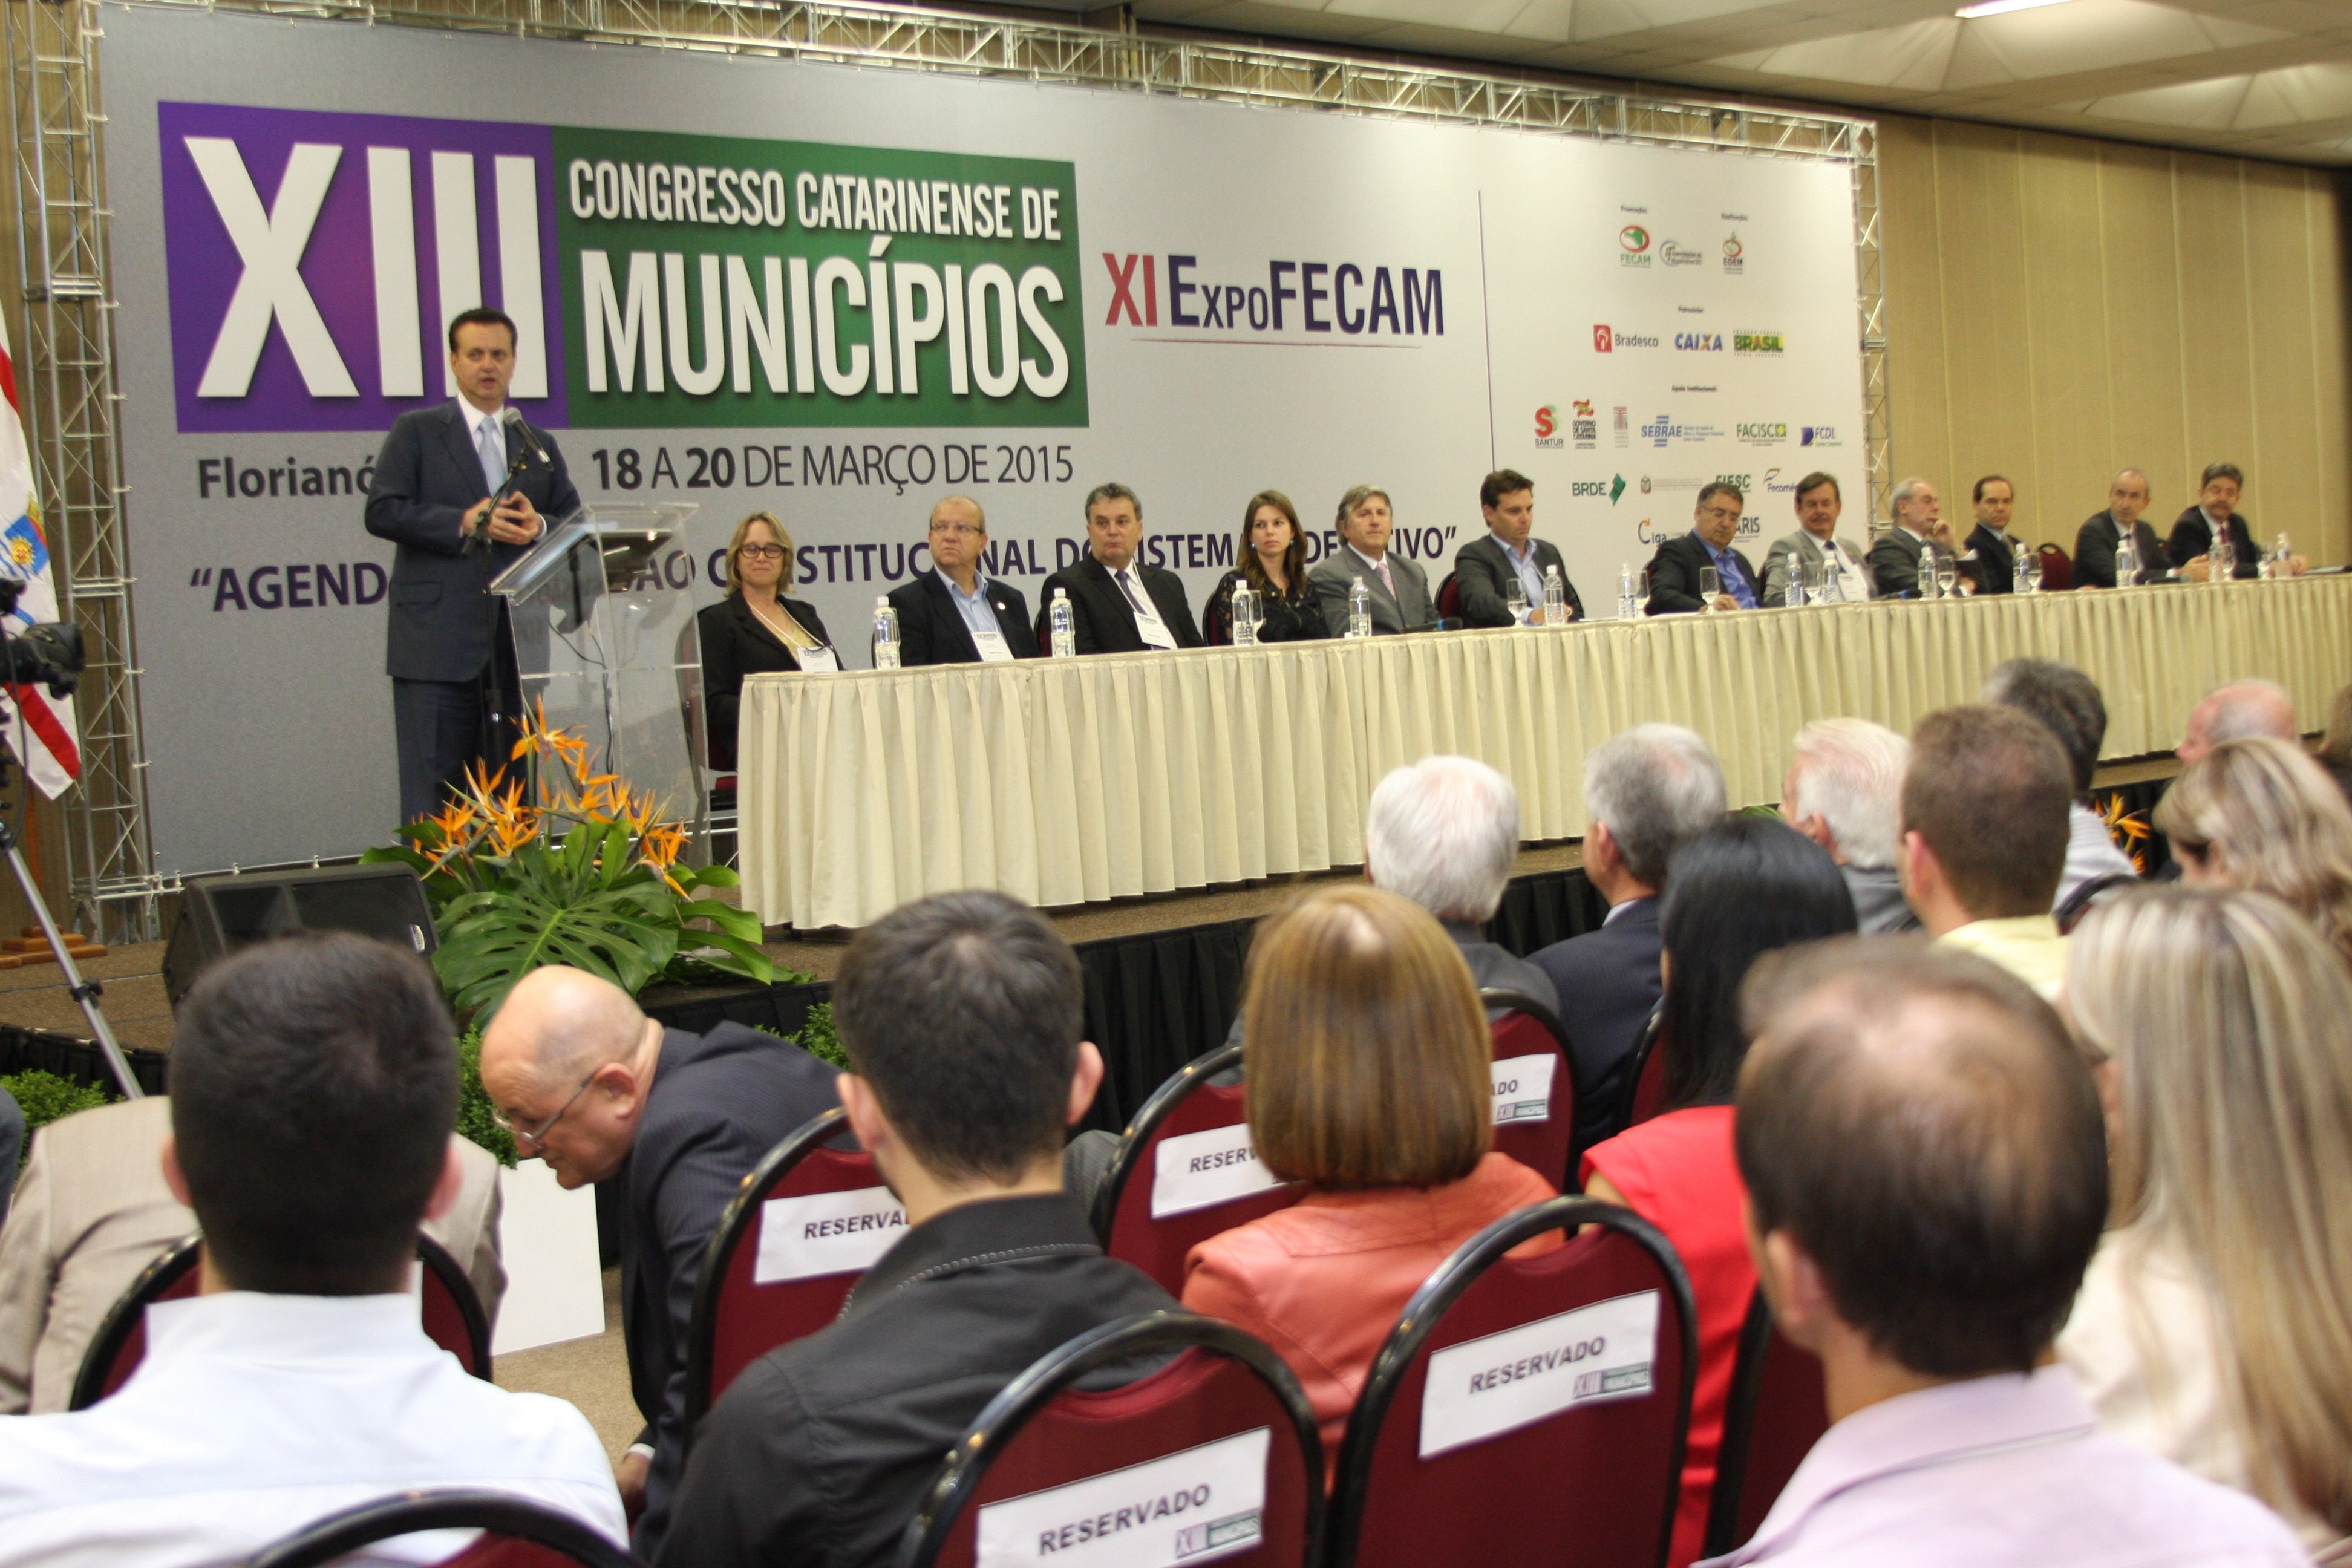 You are currently viewing Granfpolis presente ao XIII Congresso Catarinense de Municípios